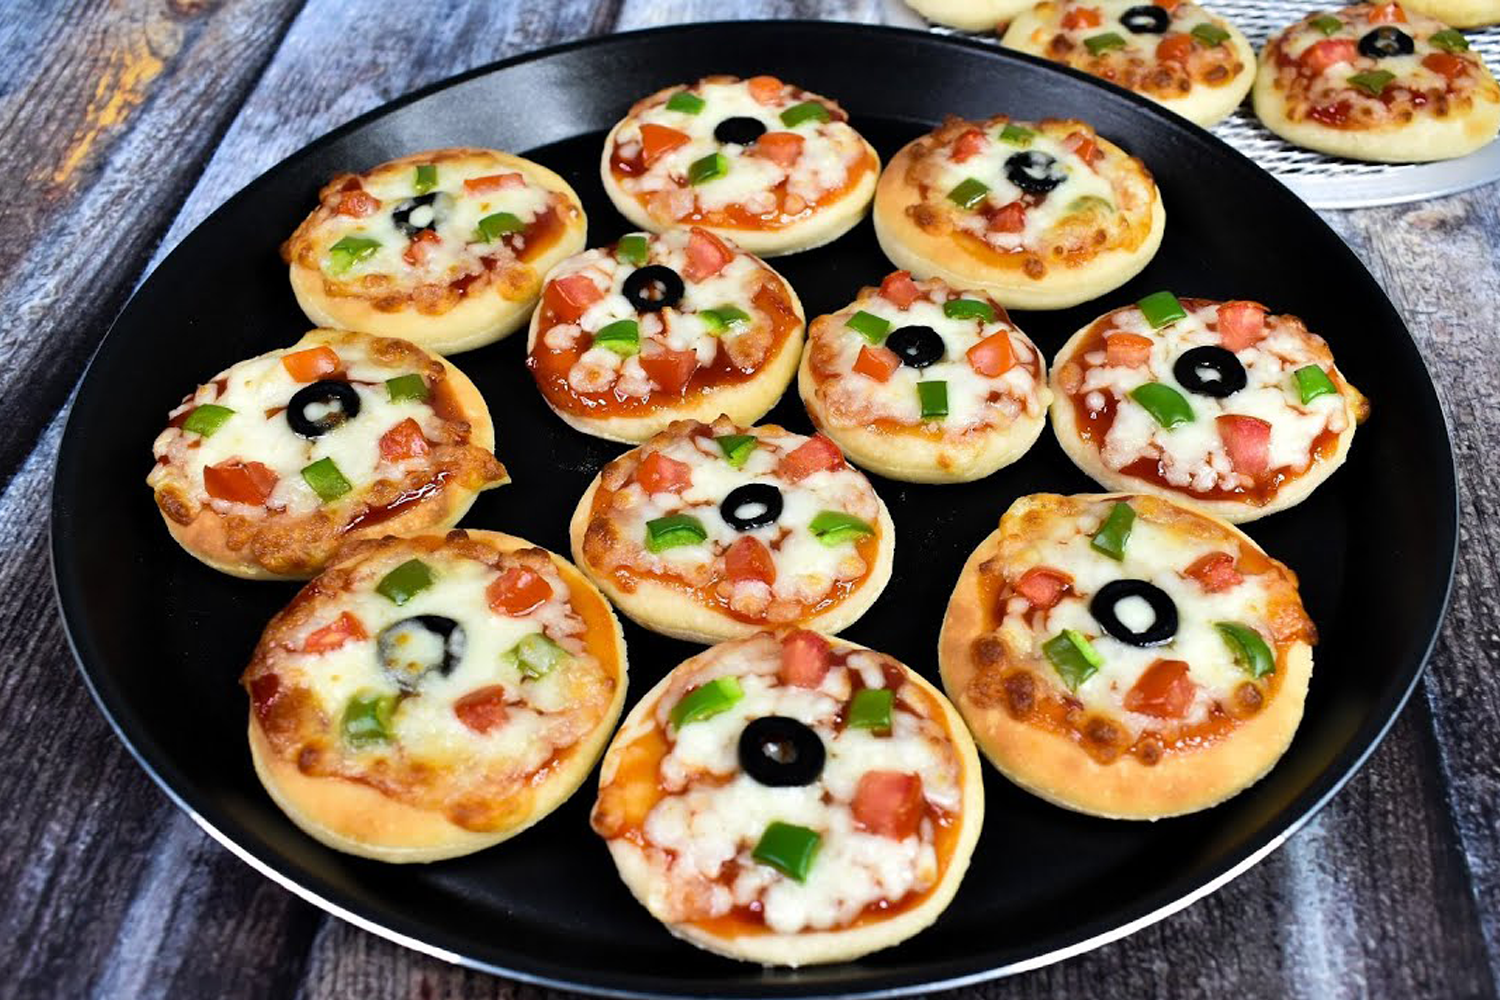 mini-pizza